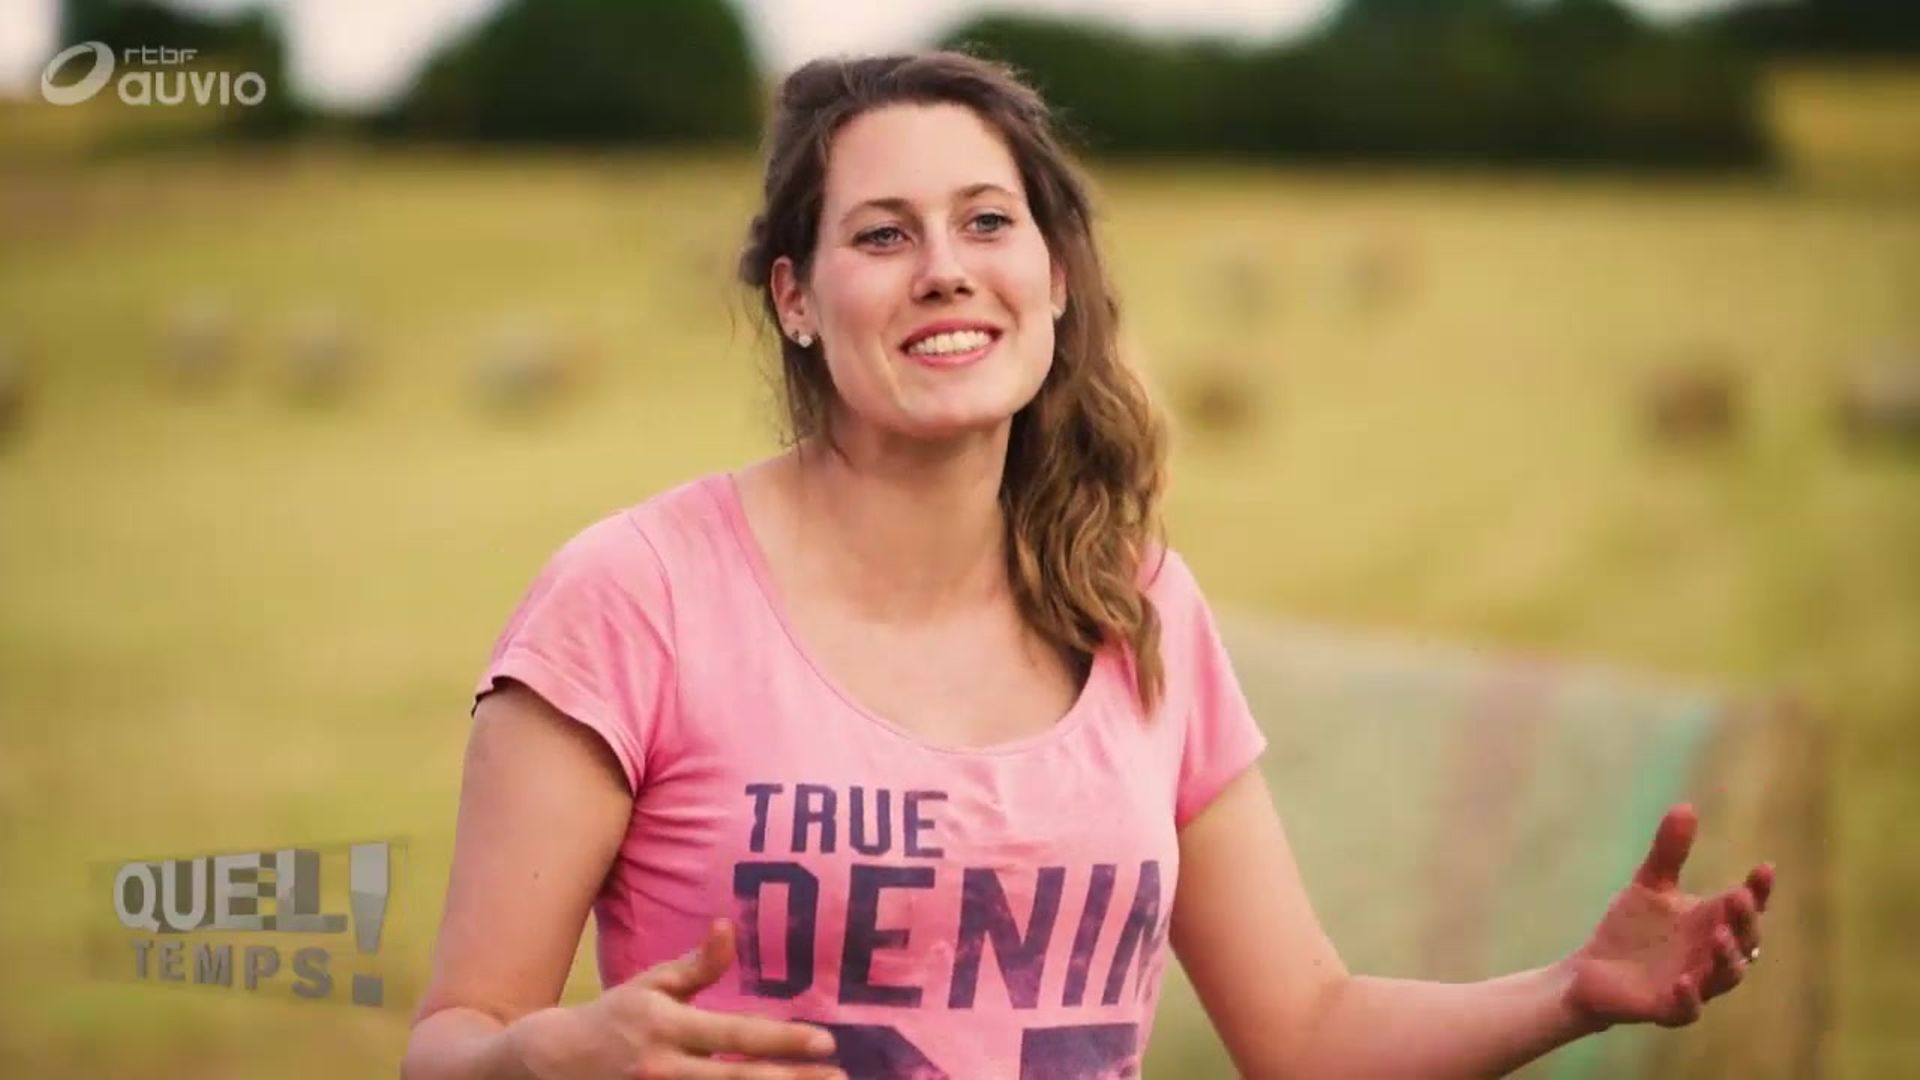 Plongez dans le quotidien d'une jeune agricultrice wallonne avec ce superbe documentaire